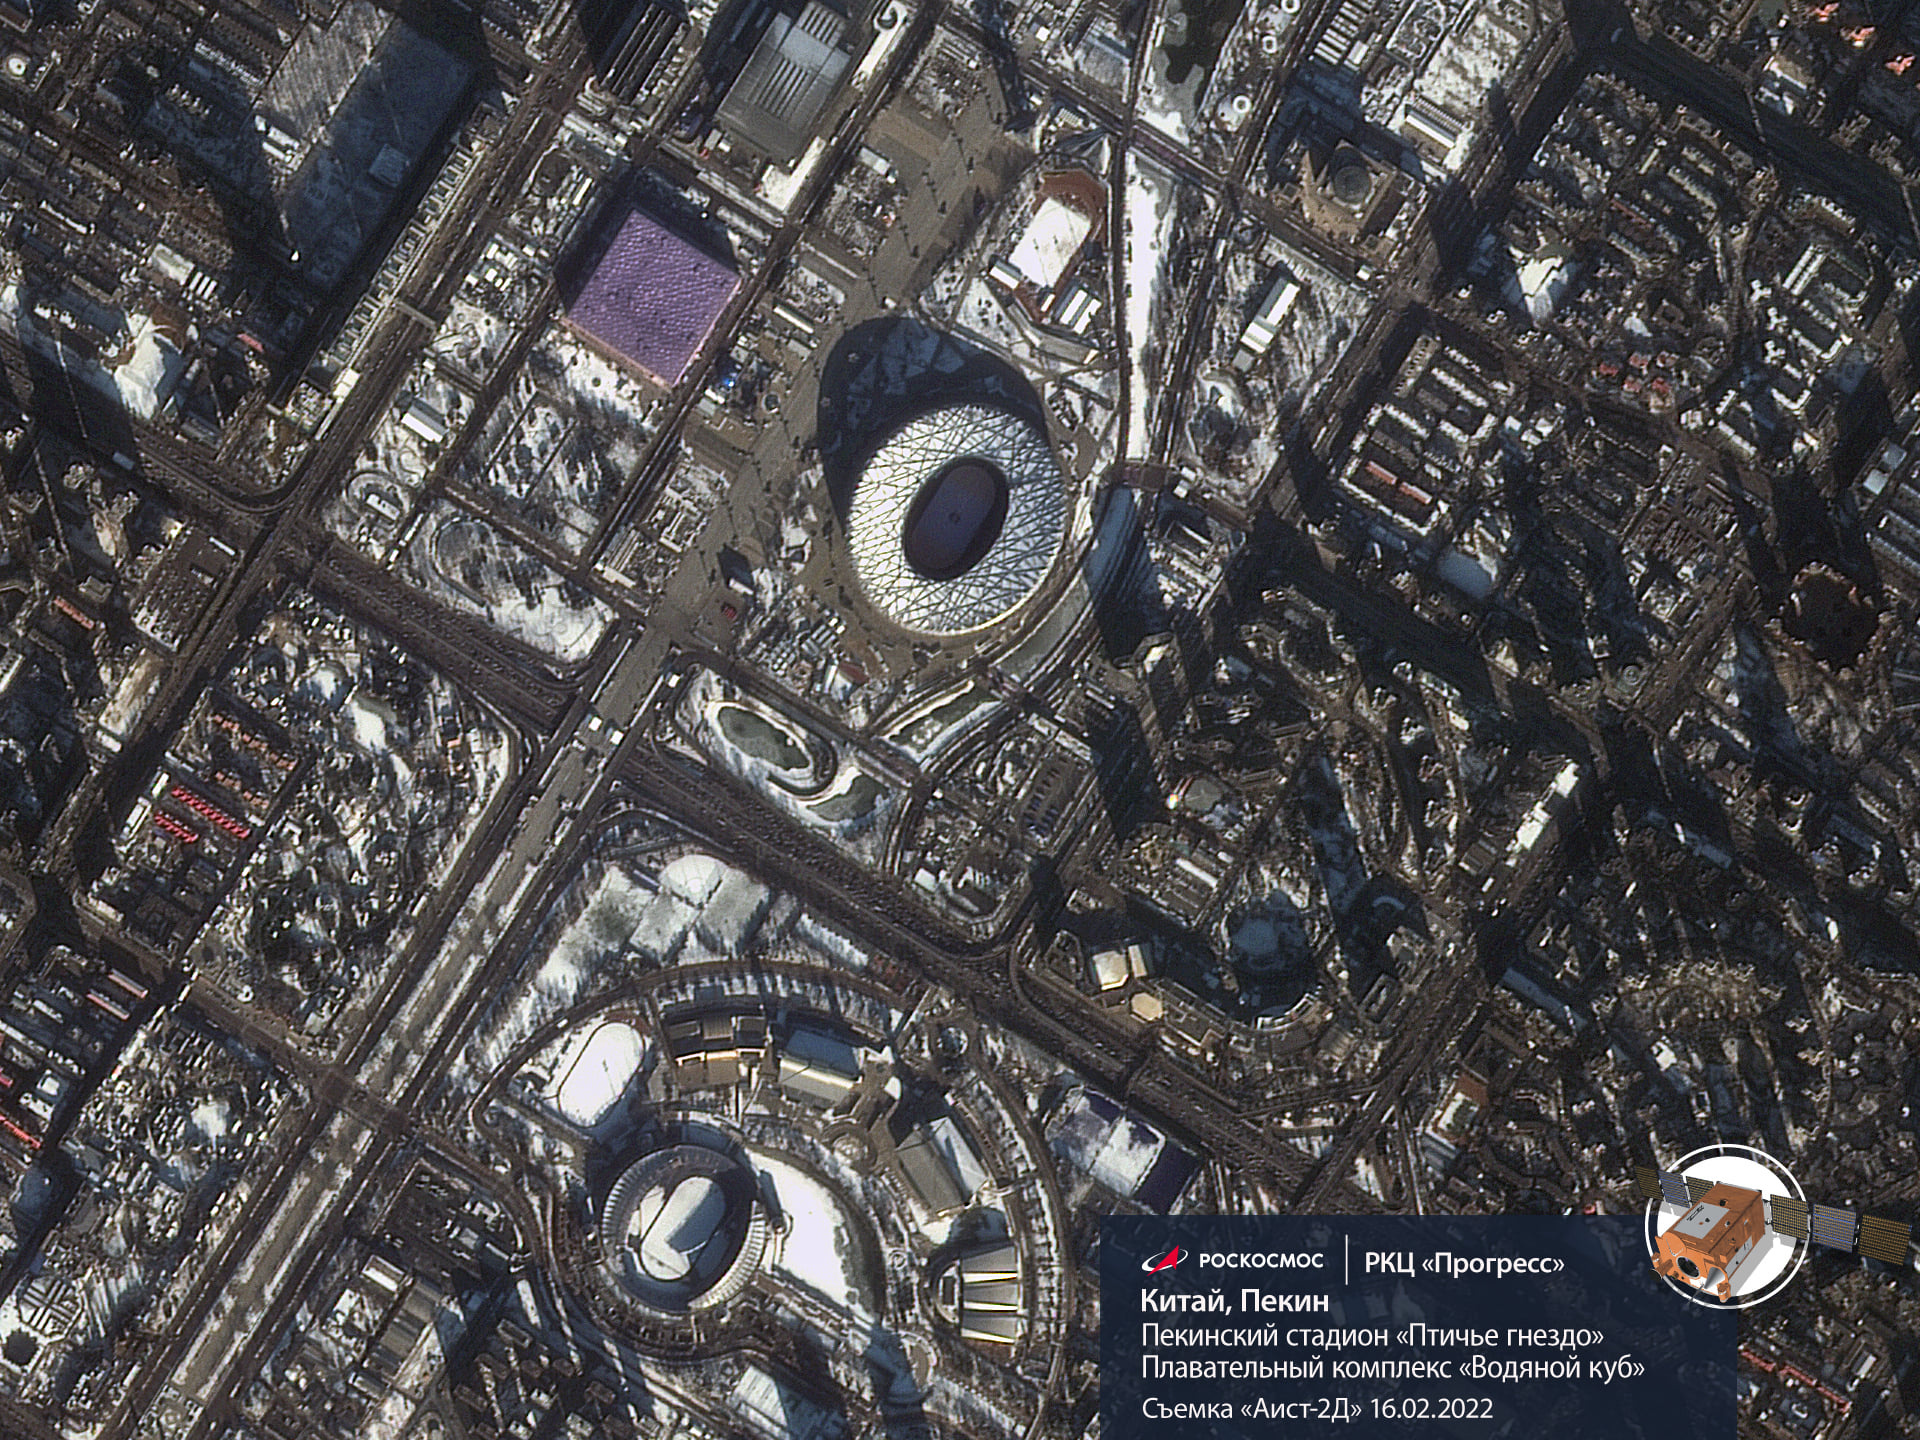 Пекинский стадион «Птичье гнездо». Здесь прошло открытие Олимпиады и состоится закрытие зимних Игр